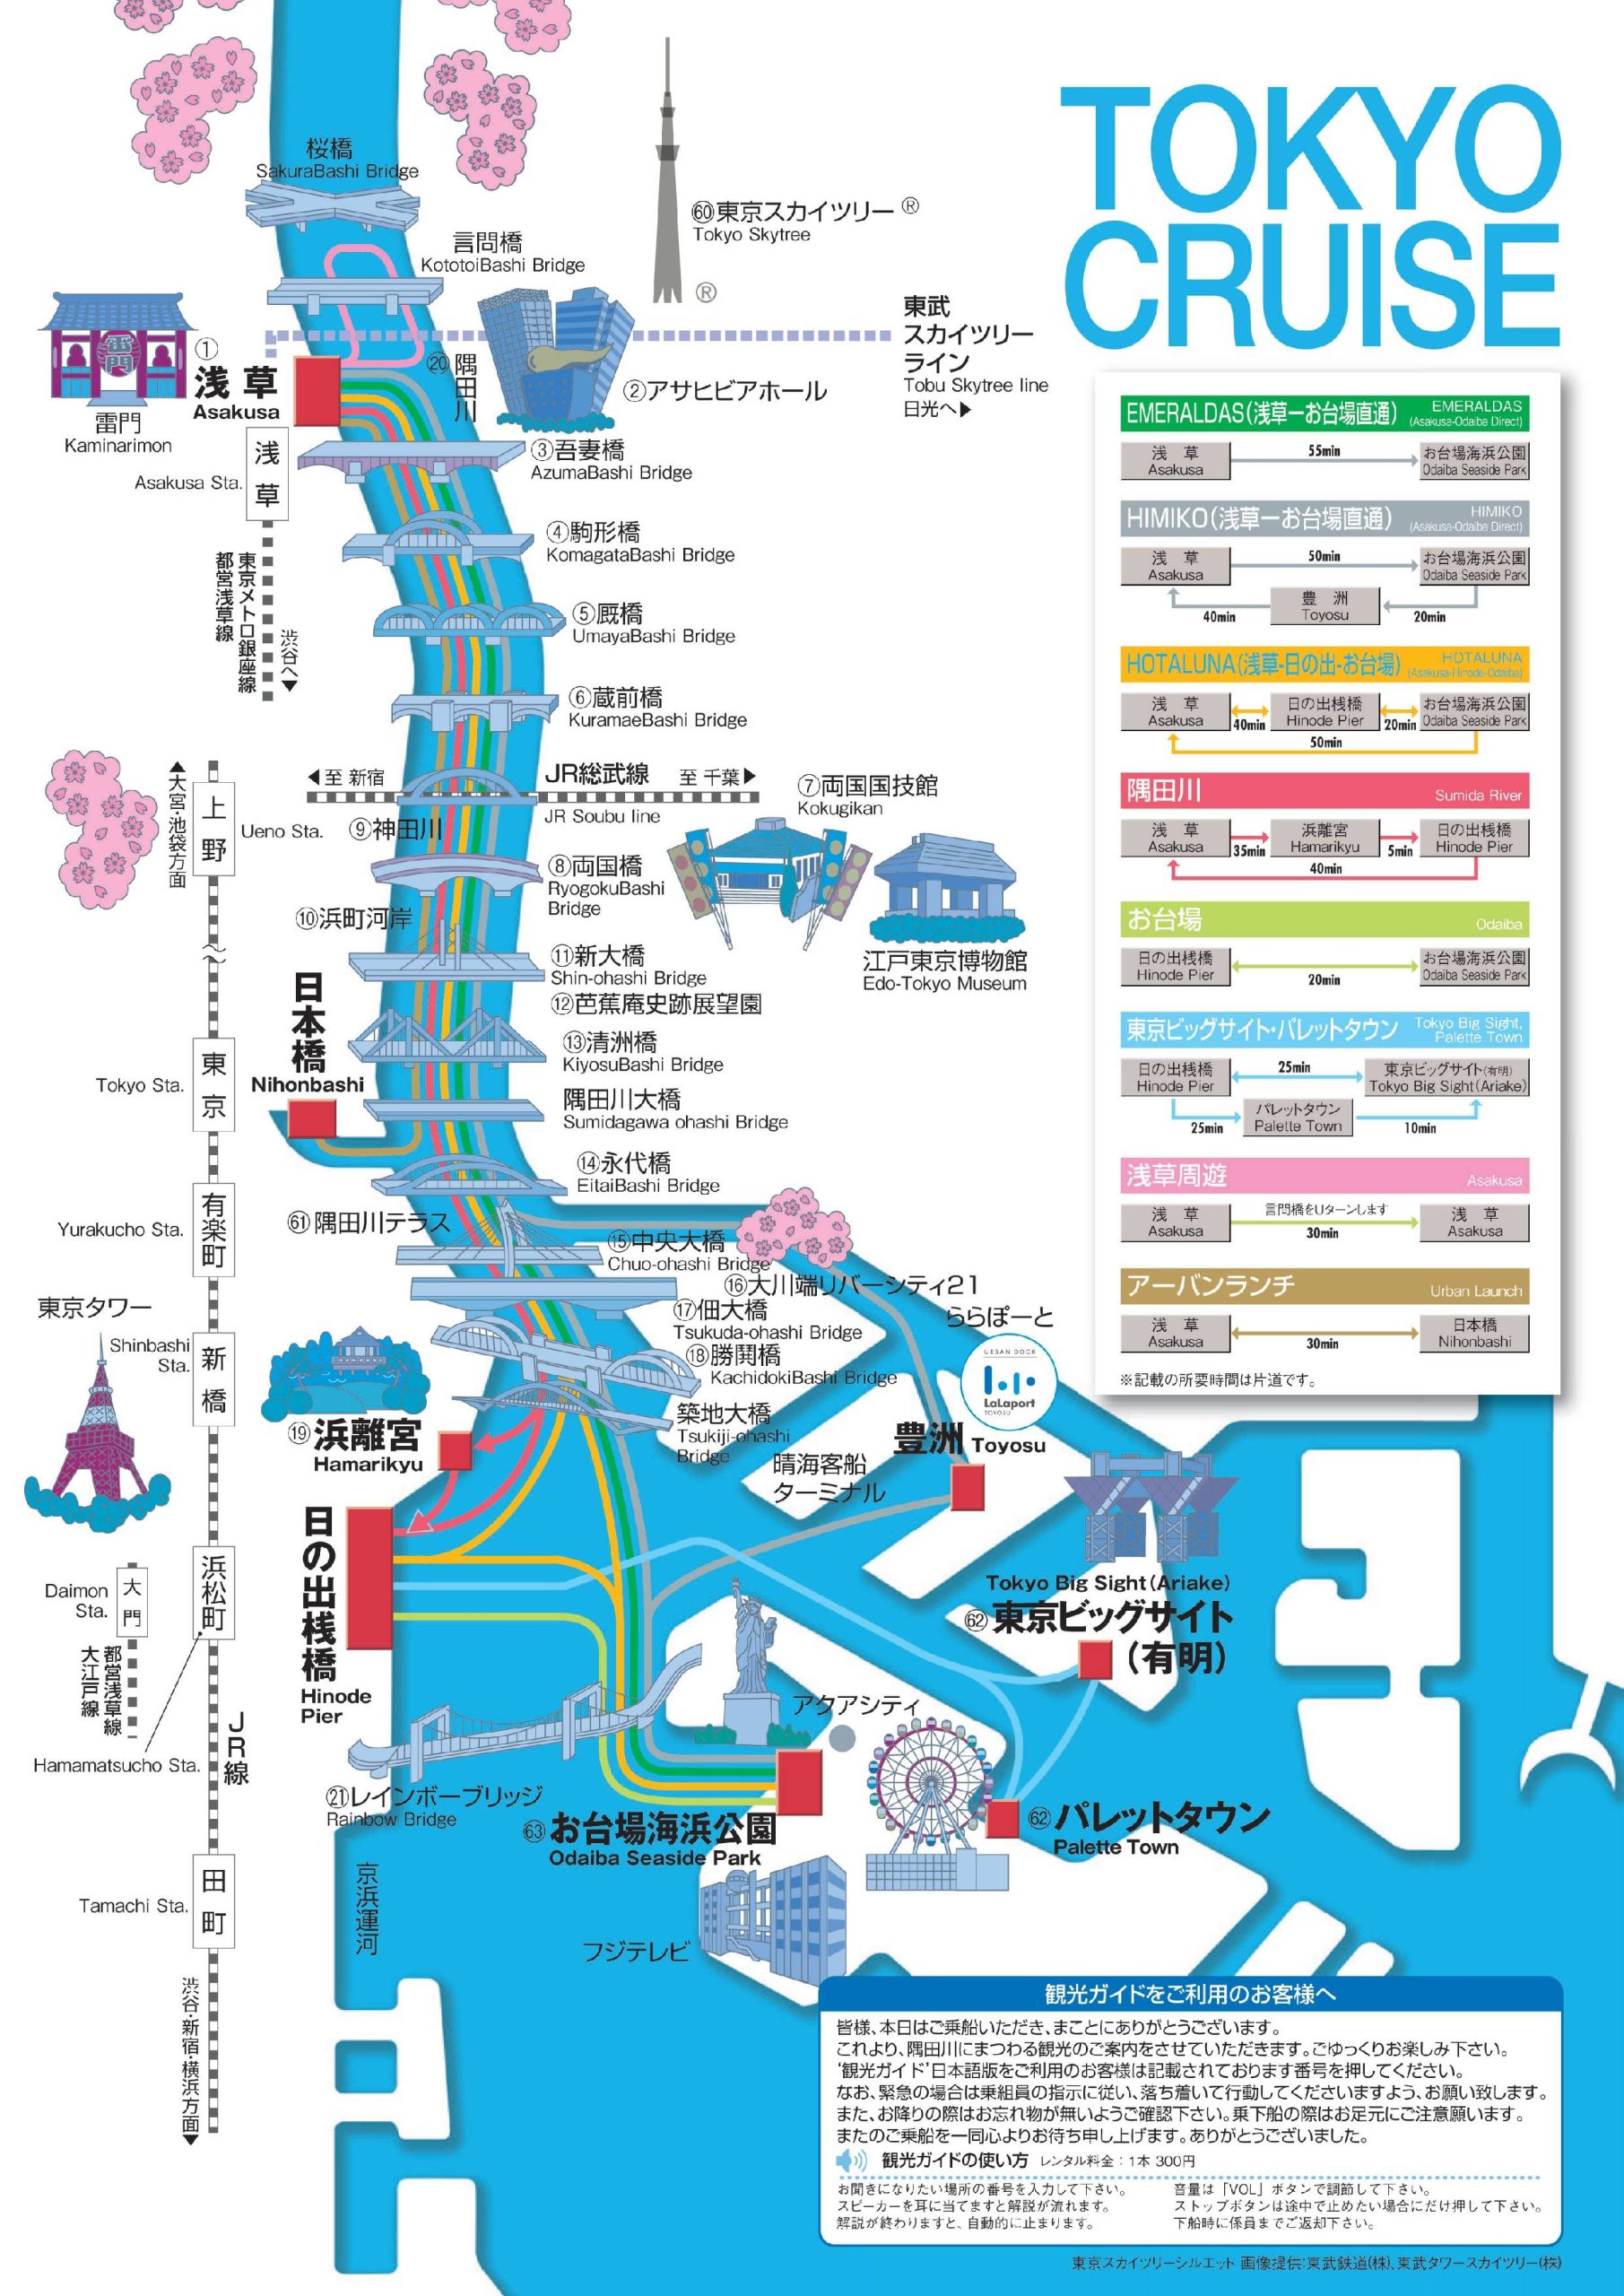 TOKYO CRIUSE HOTALUNA 路線圖